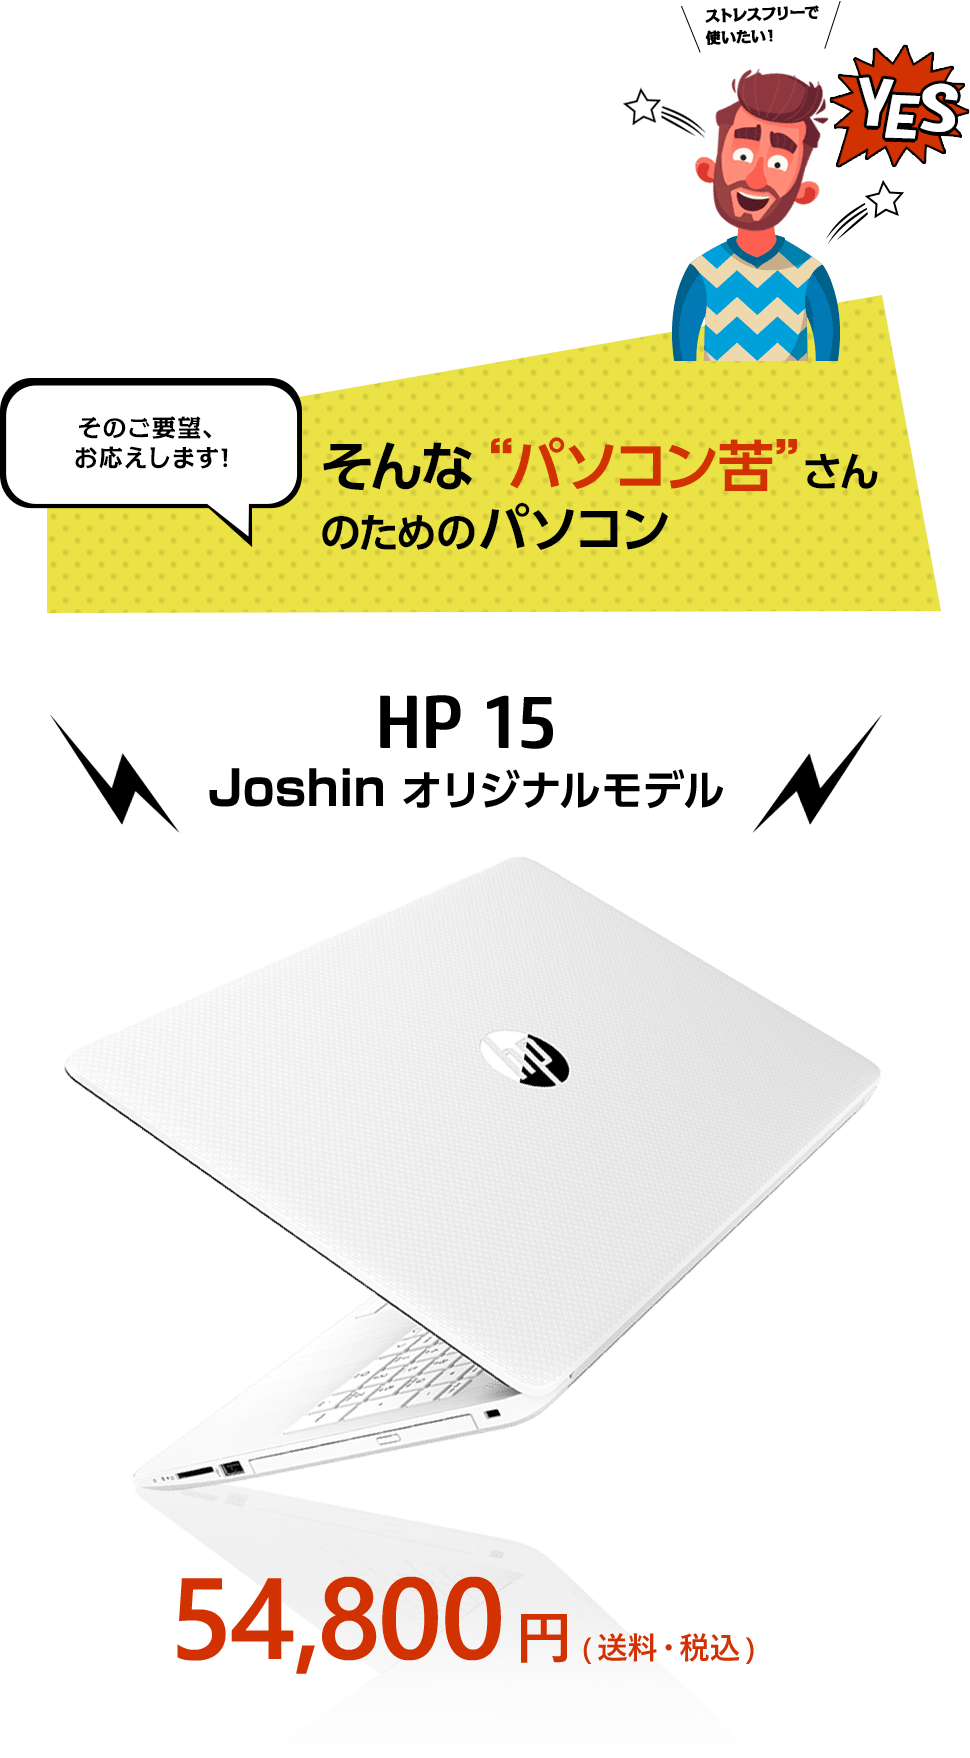 そんな“パソコン苦”さんのためのパソコン「HP 15 Joshin オリジナルモデル」